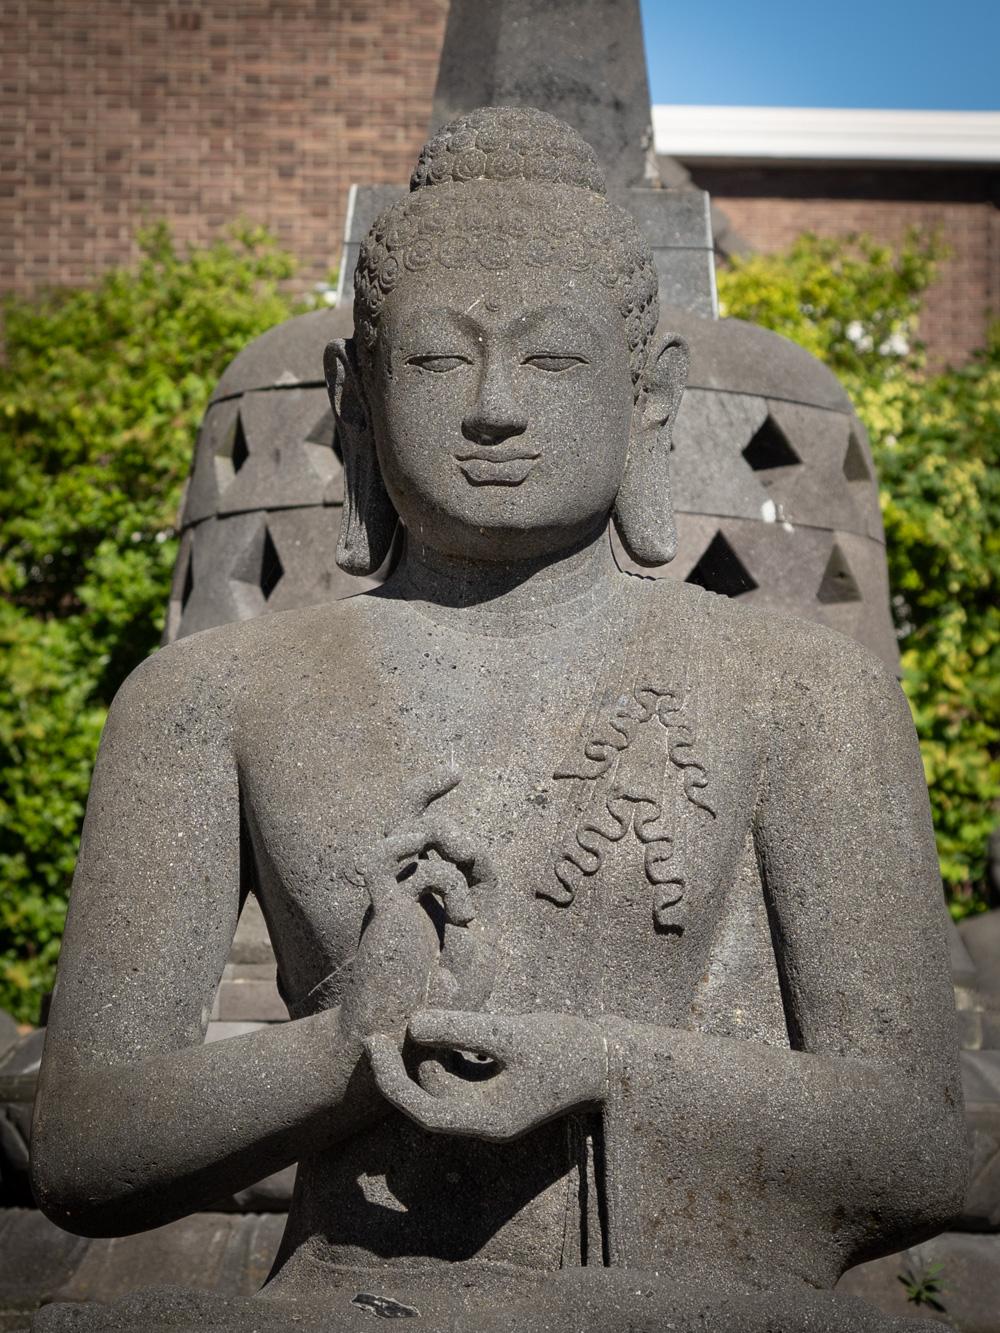 Grande statue de Bouddha en lavastone
Matière : lavastone
117 cm de haut
93 cm de large et 67 cm de profondeur
Poids estimé : +/- 350 kg
Dharmachakra mudra
Nouvellement sculptée à la main à partir d'un seul bloc de lavastone
Peut être expédié dans